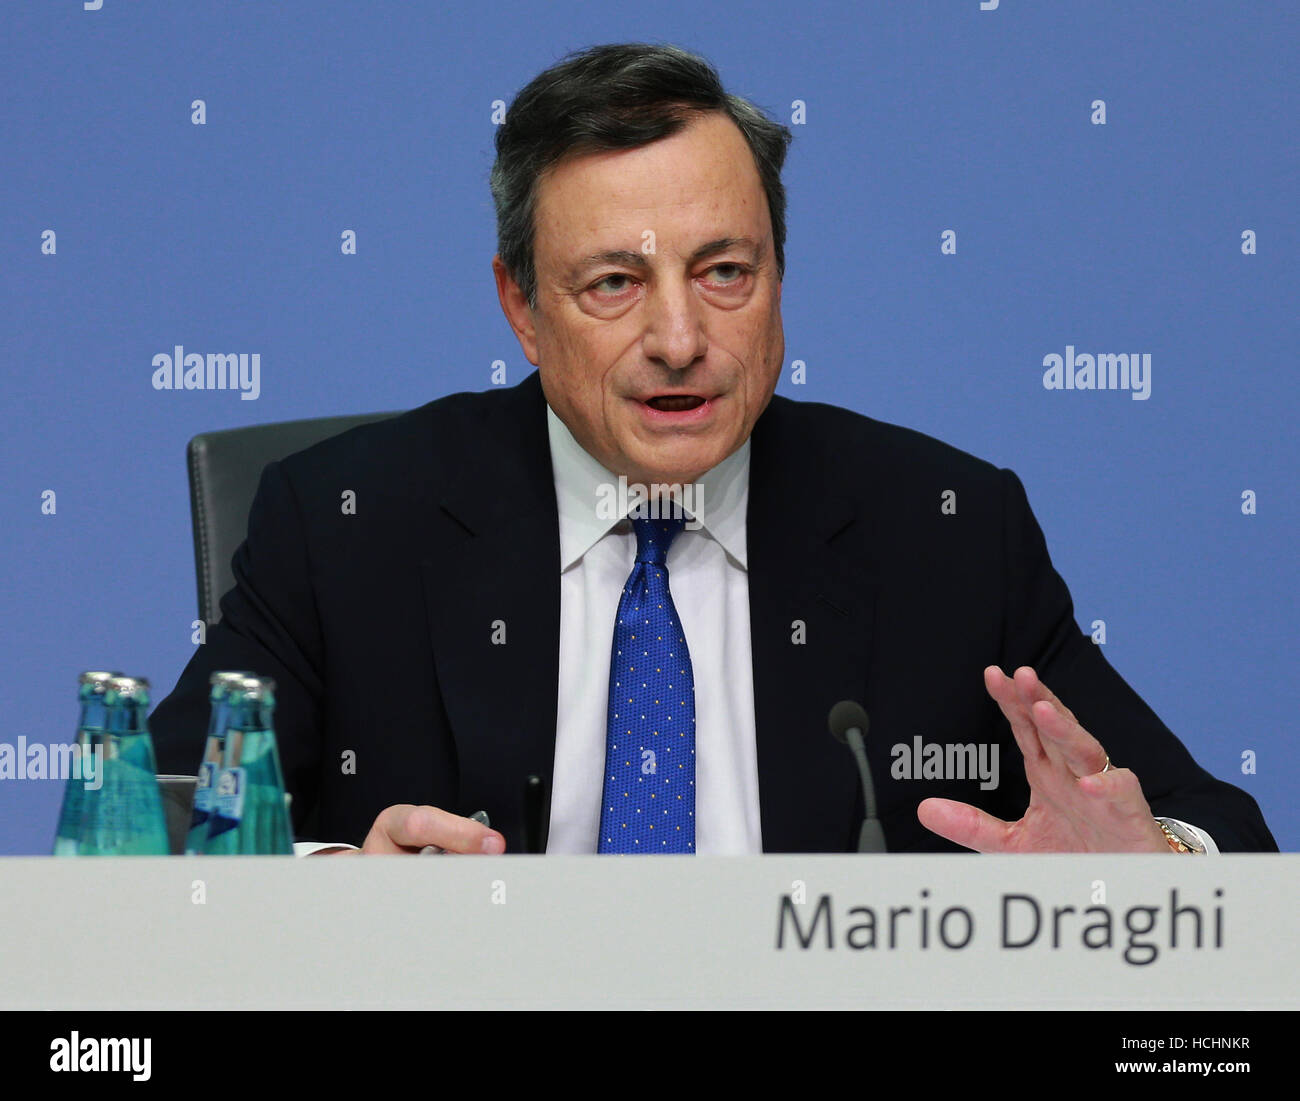 Francfort, Allemagne. 8e Dec 2016. Banque centrale européenne (BCE) Mario Draghi Président assiste à une conférence de presse au siège de la BCE à Francfort, Allemagne, le 8 décembre 2016. © Luo Huanhuan/Xinhua/Alamy Live News Banque D'Images